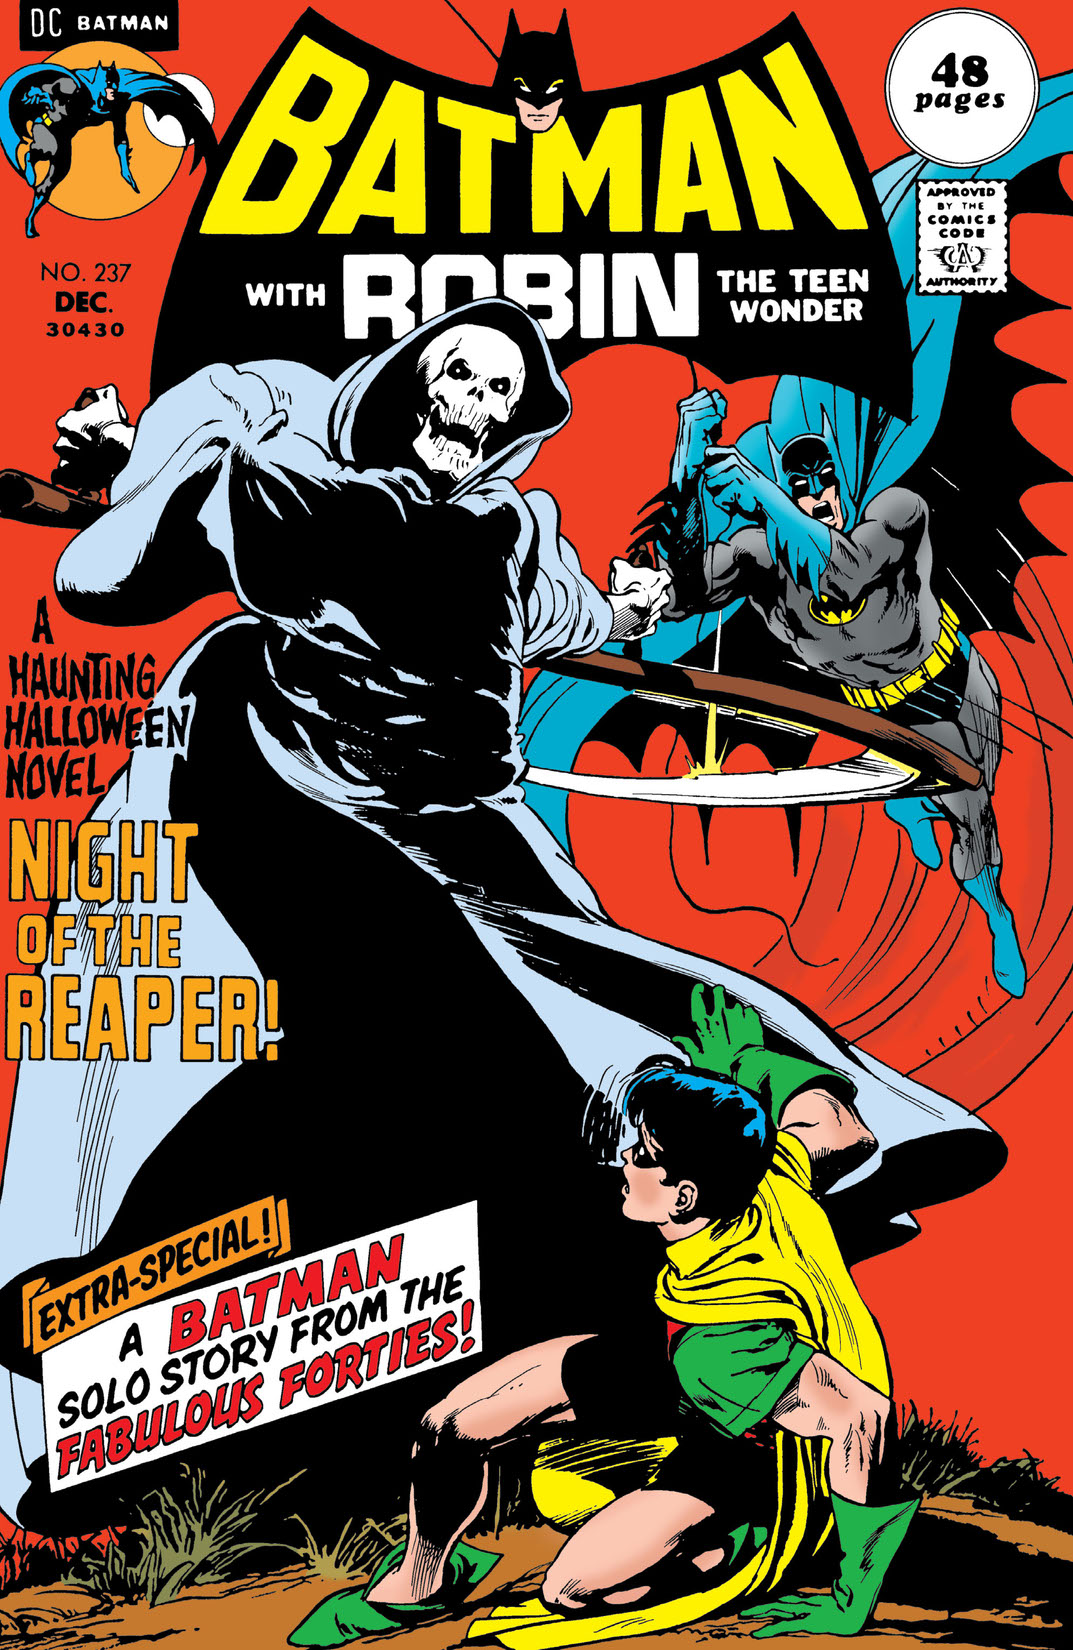 Batman (1940-) #237 preview images